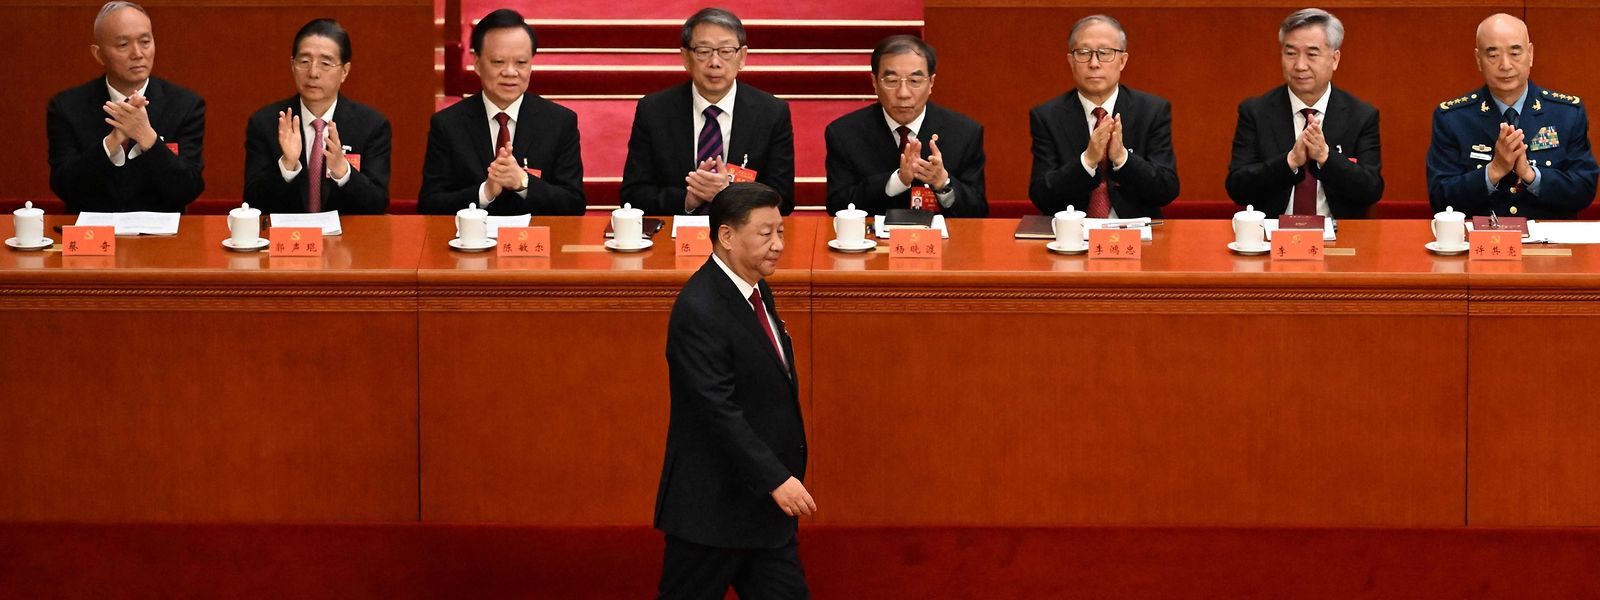 Der chinesische Präsident Xi Jinping trifft zum Kongress der Kommunistischen Partei in der Großen Halle des Volkes in Peking ein.
